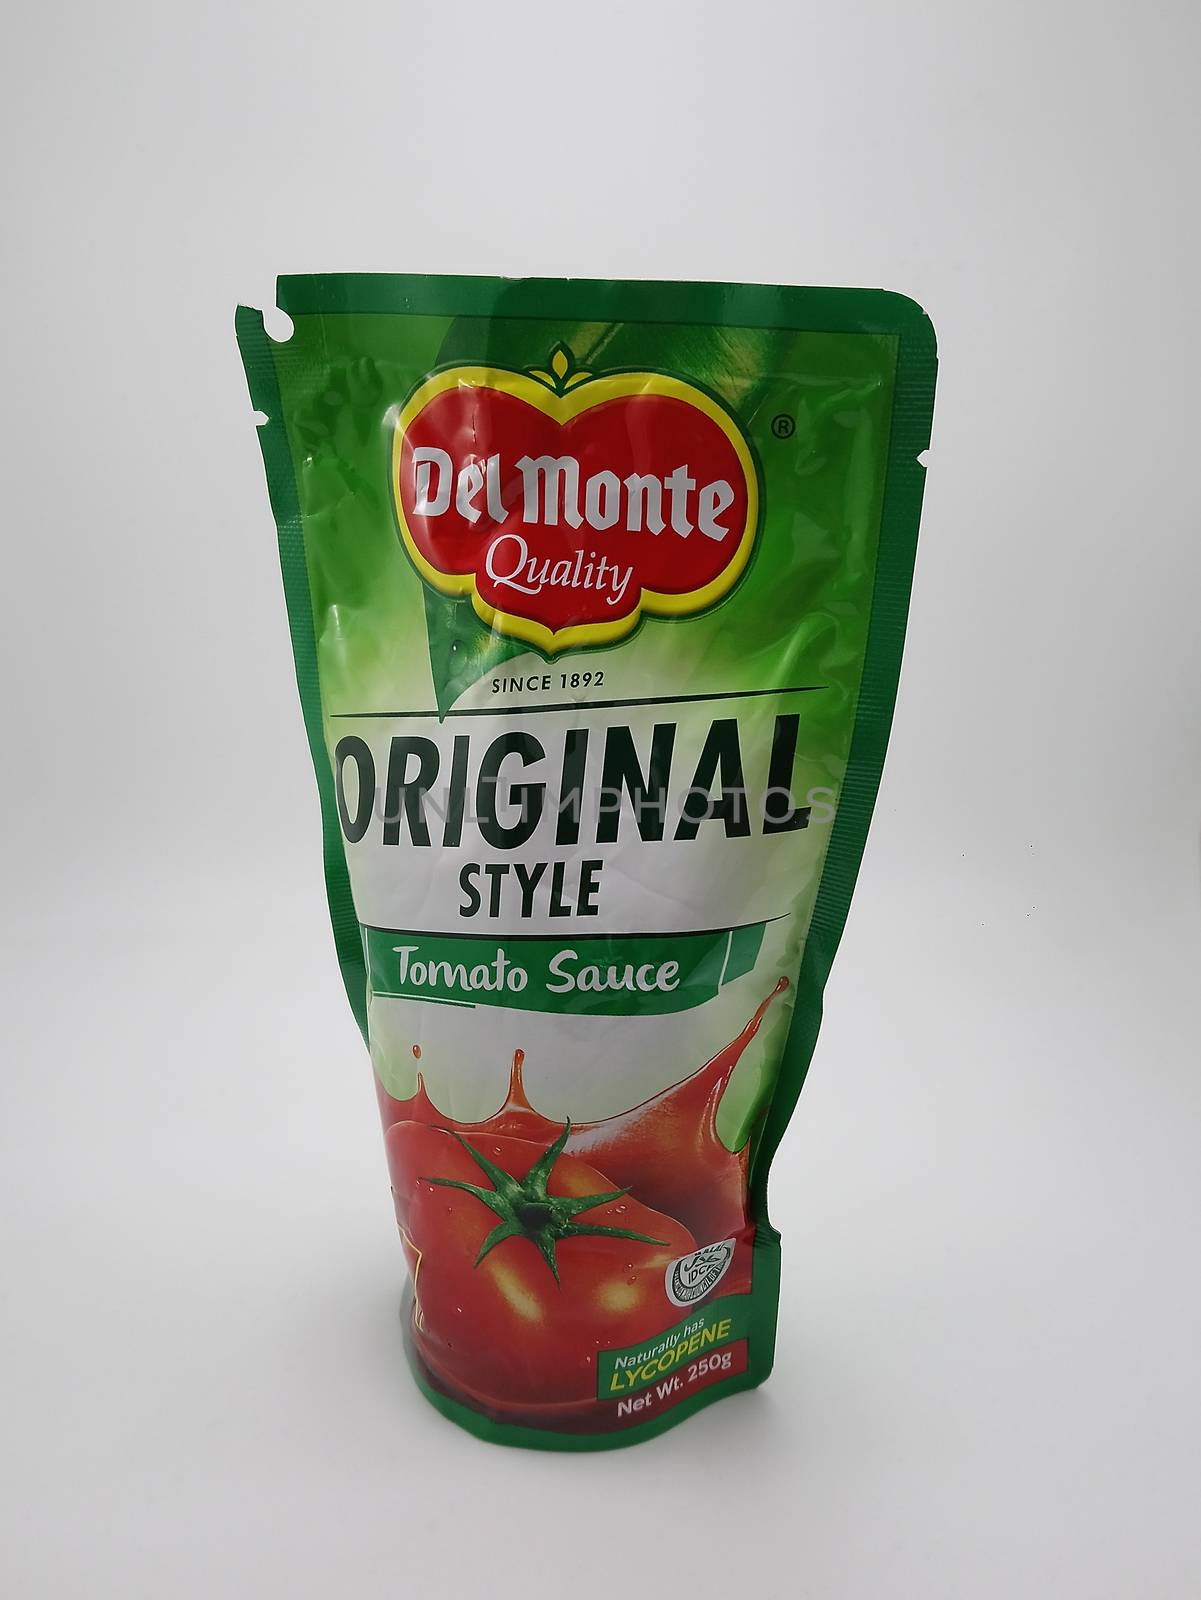 Del monte original style tomato sauce in Manila, Philippines by imwaltersy